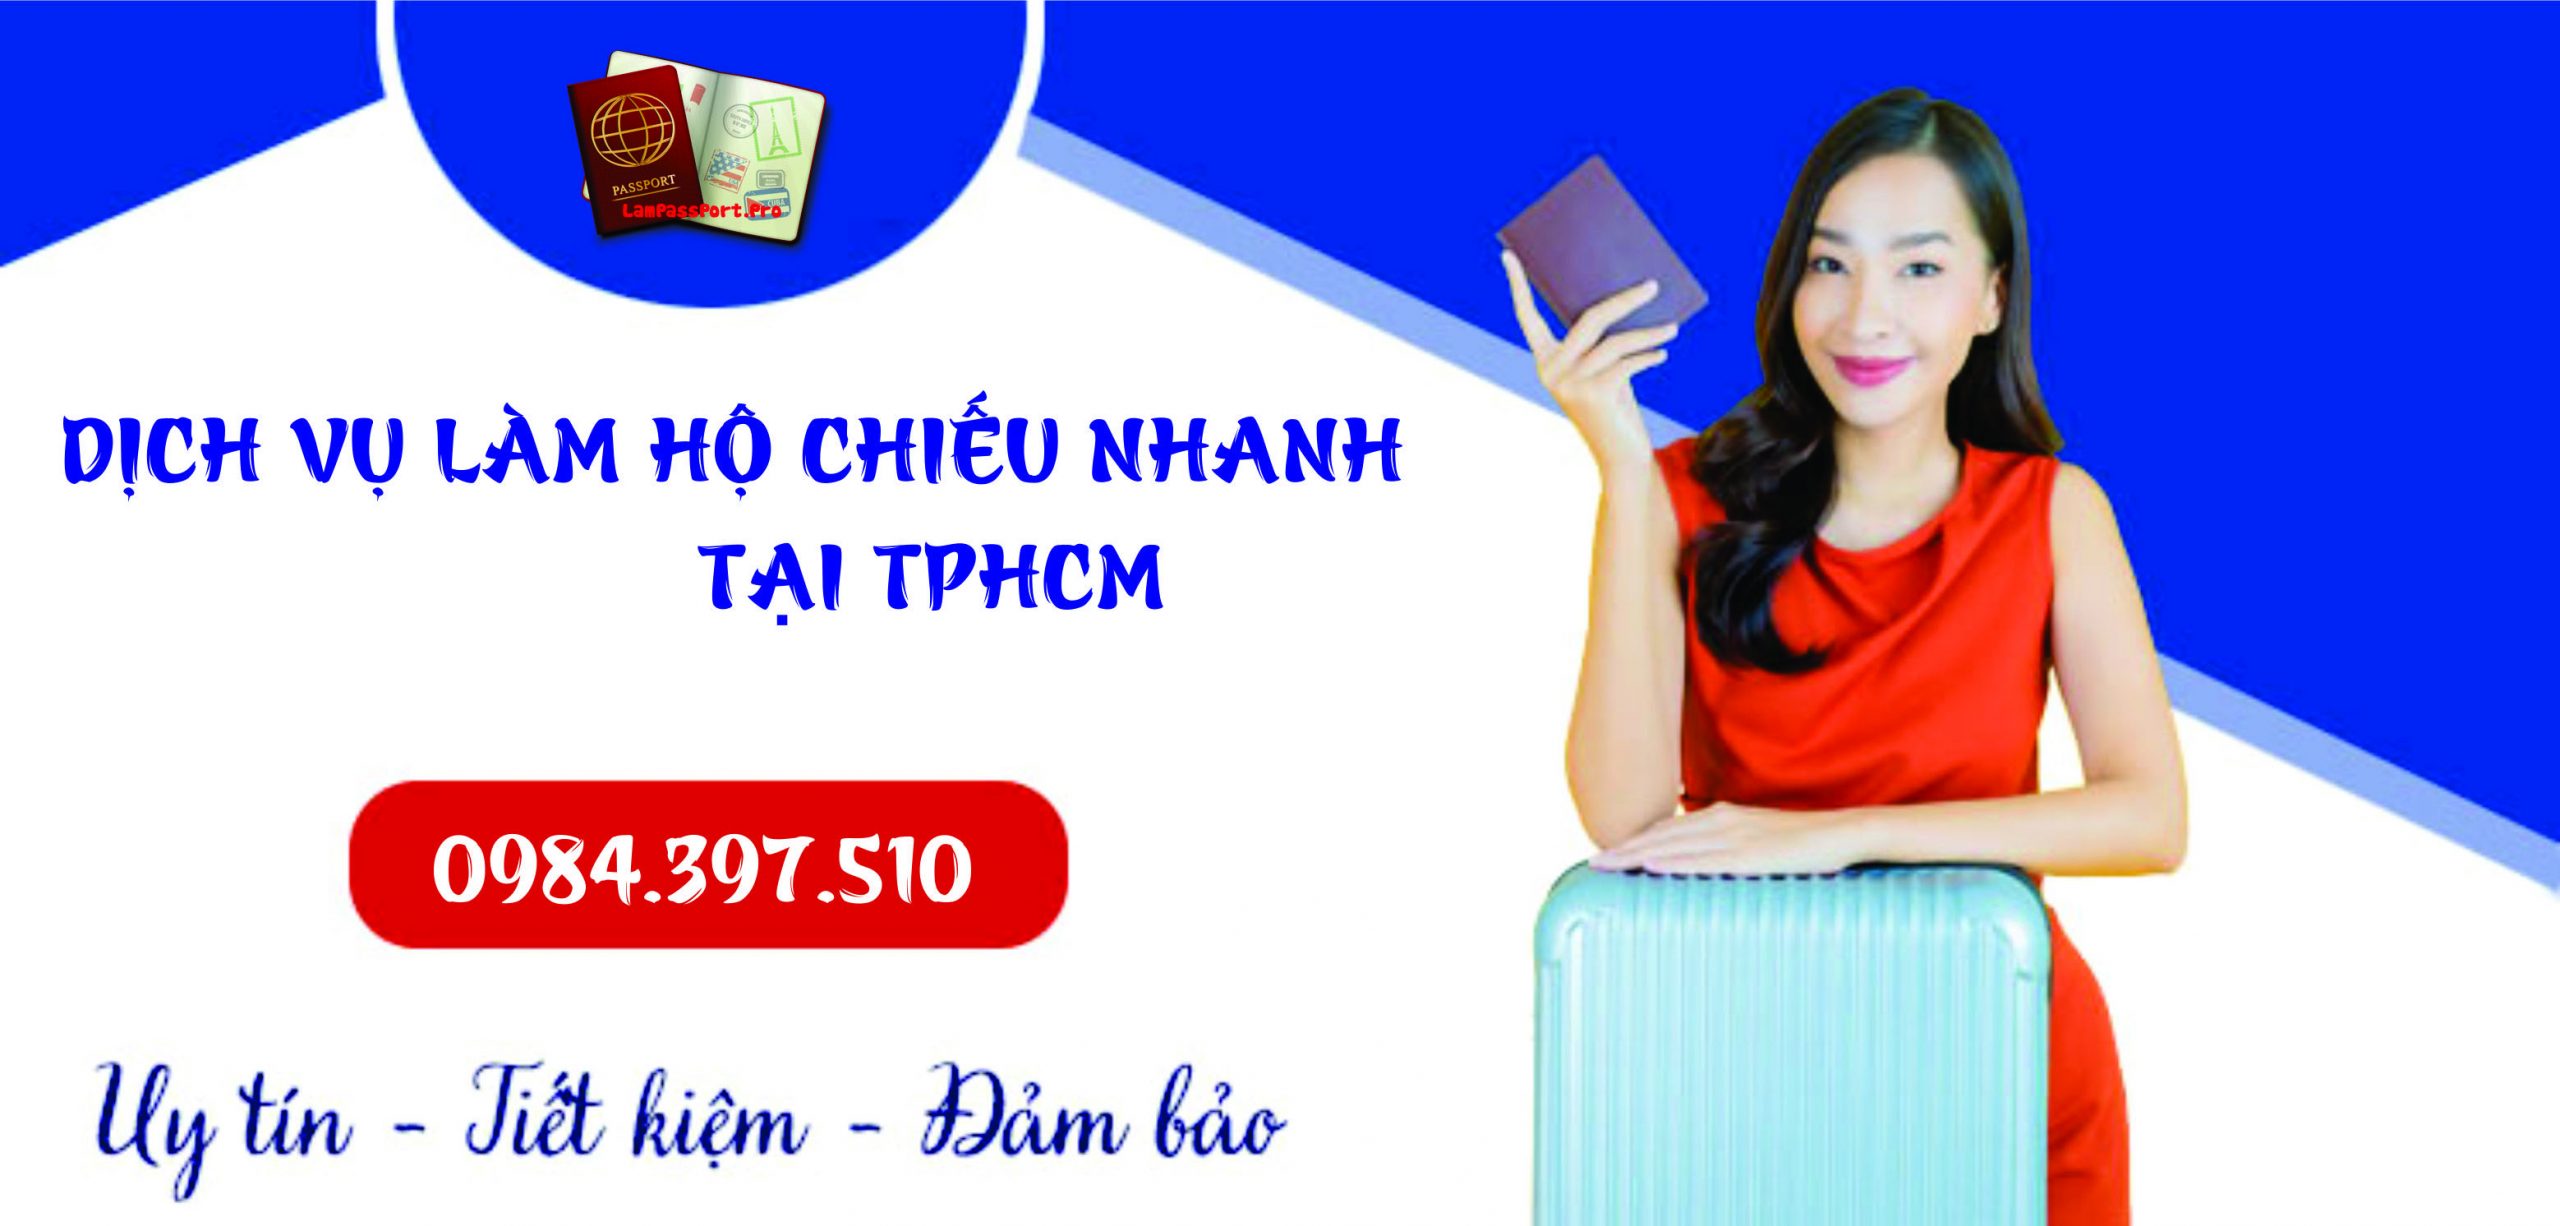 Tư vấn làm hộ chiếu nhanh tại tỉnh Nghệ An - 0984.397.510